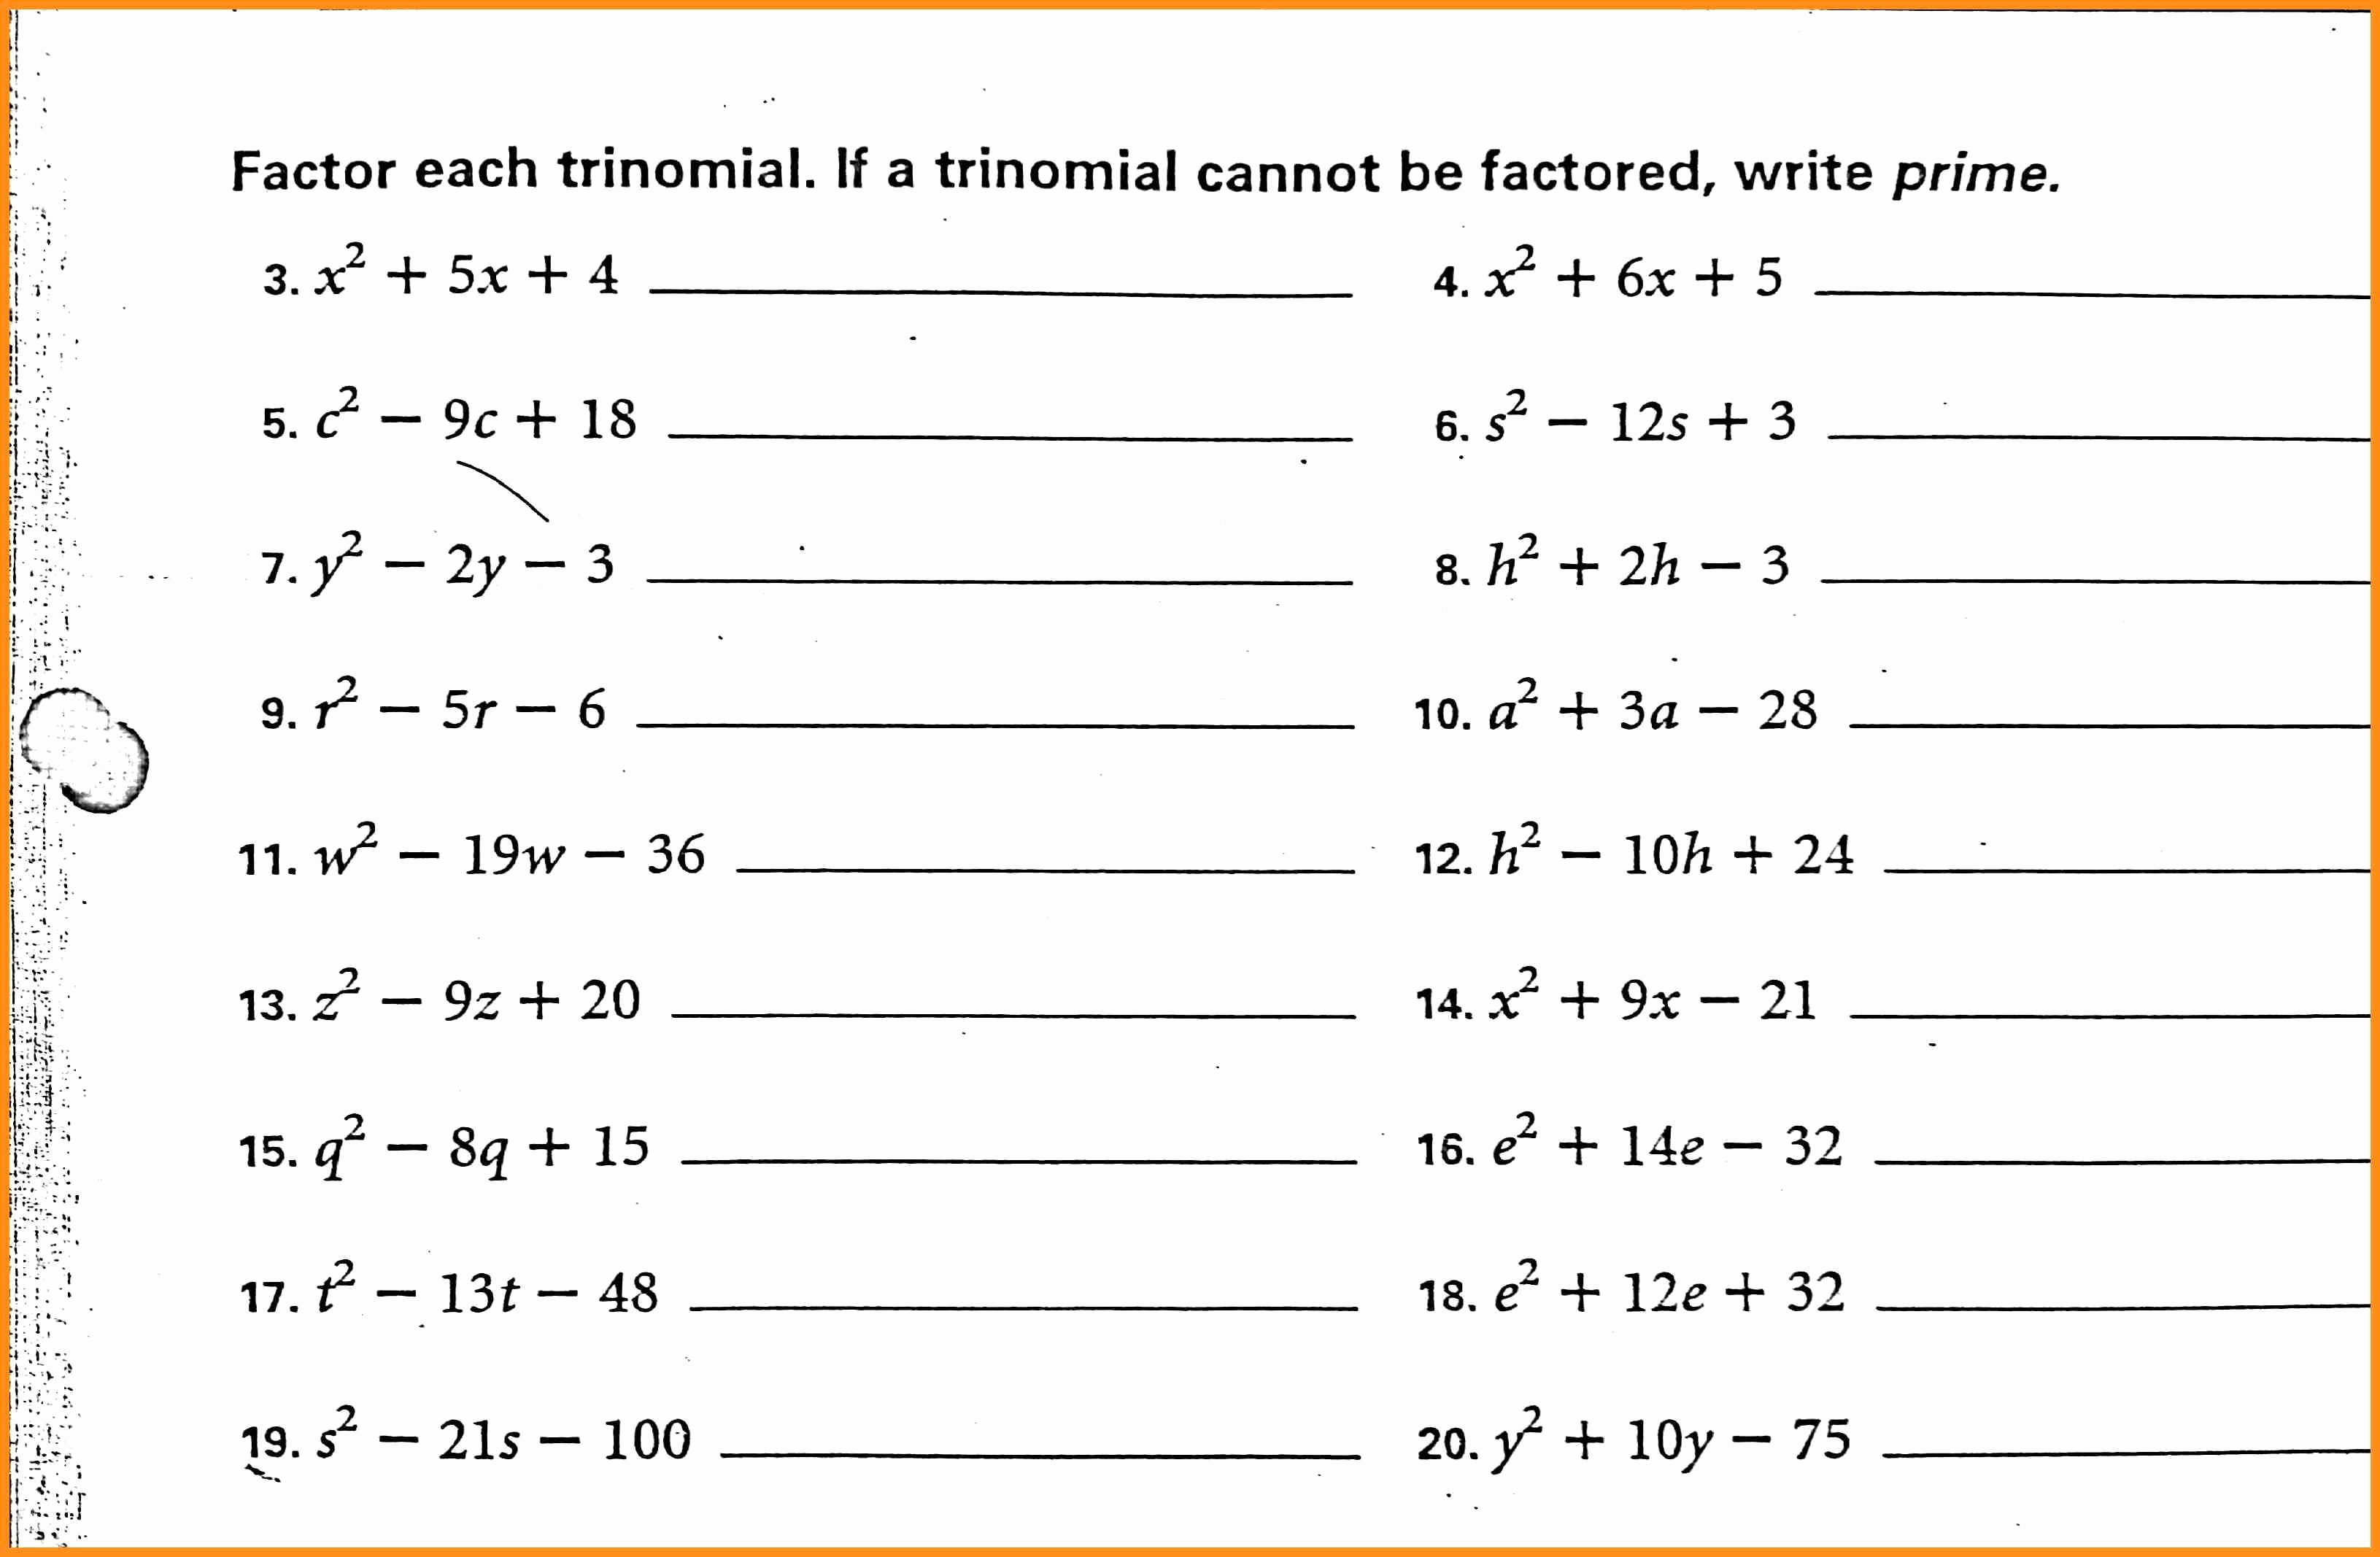 Factoring Trinomials Worksheet Pdf Elegant 56 Factoring Polynomials Worksheet Pdf Factoring